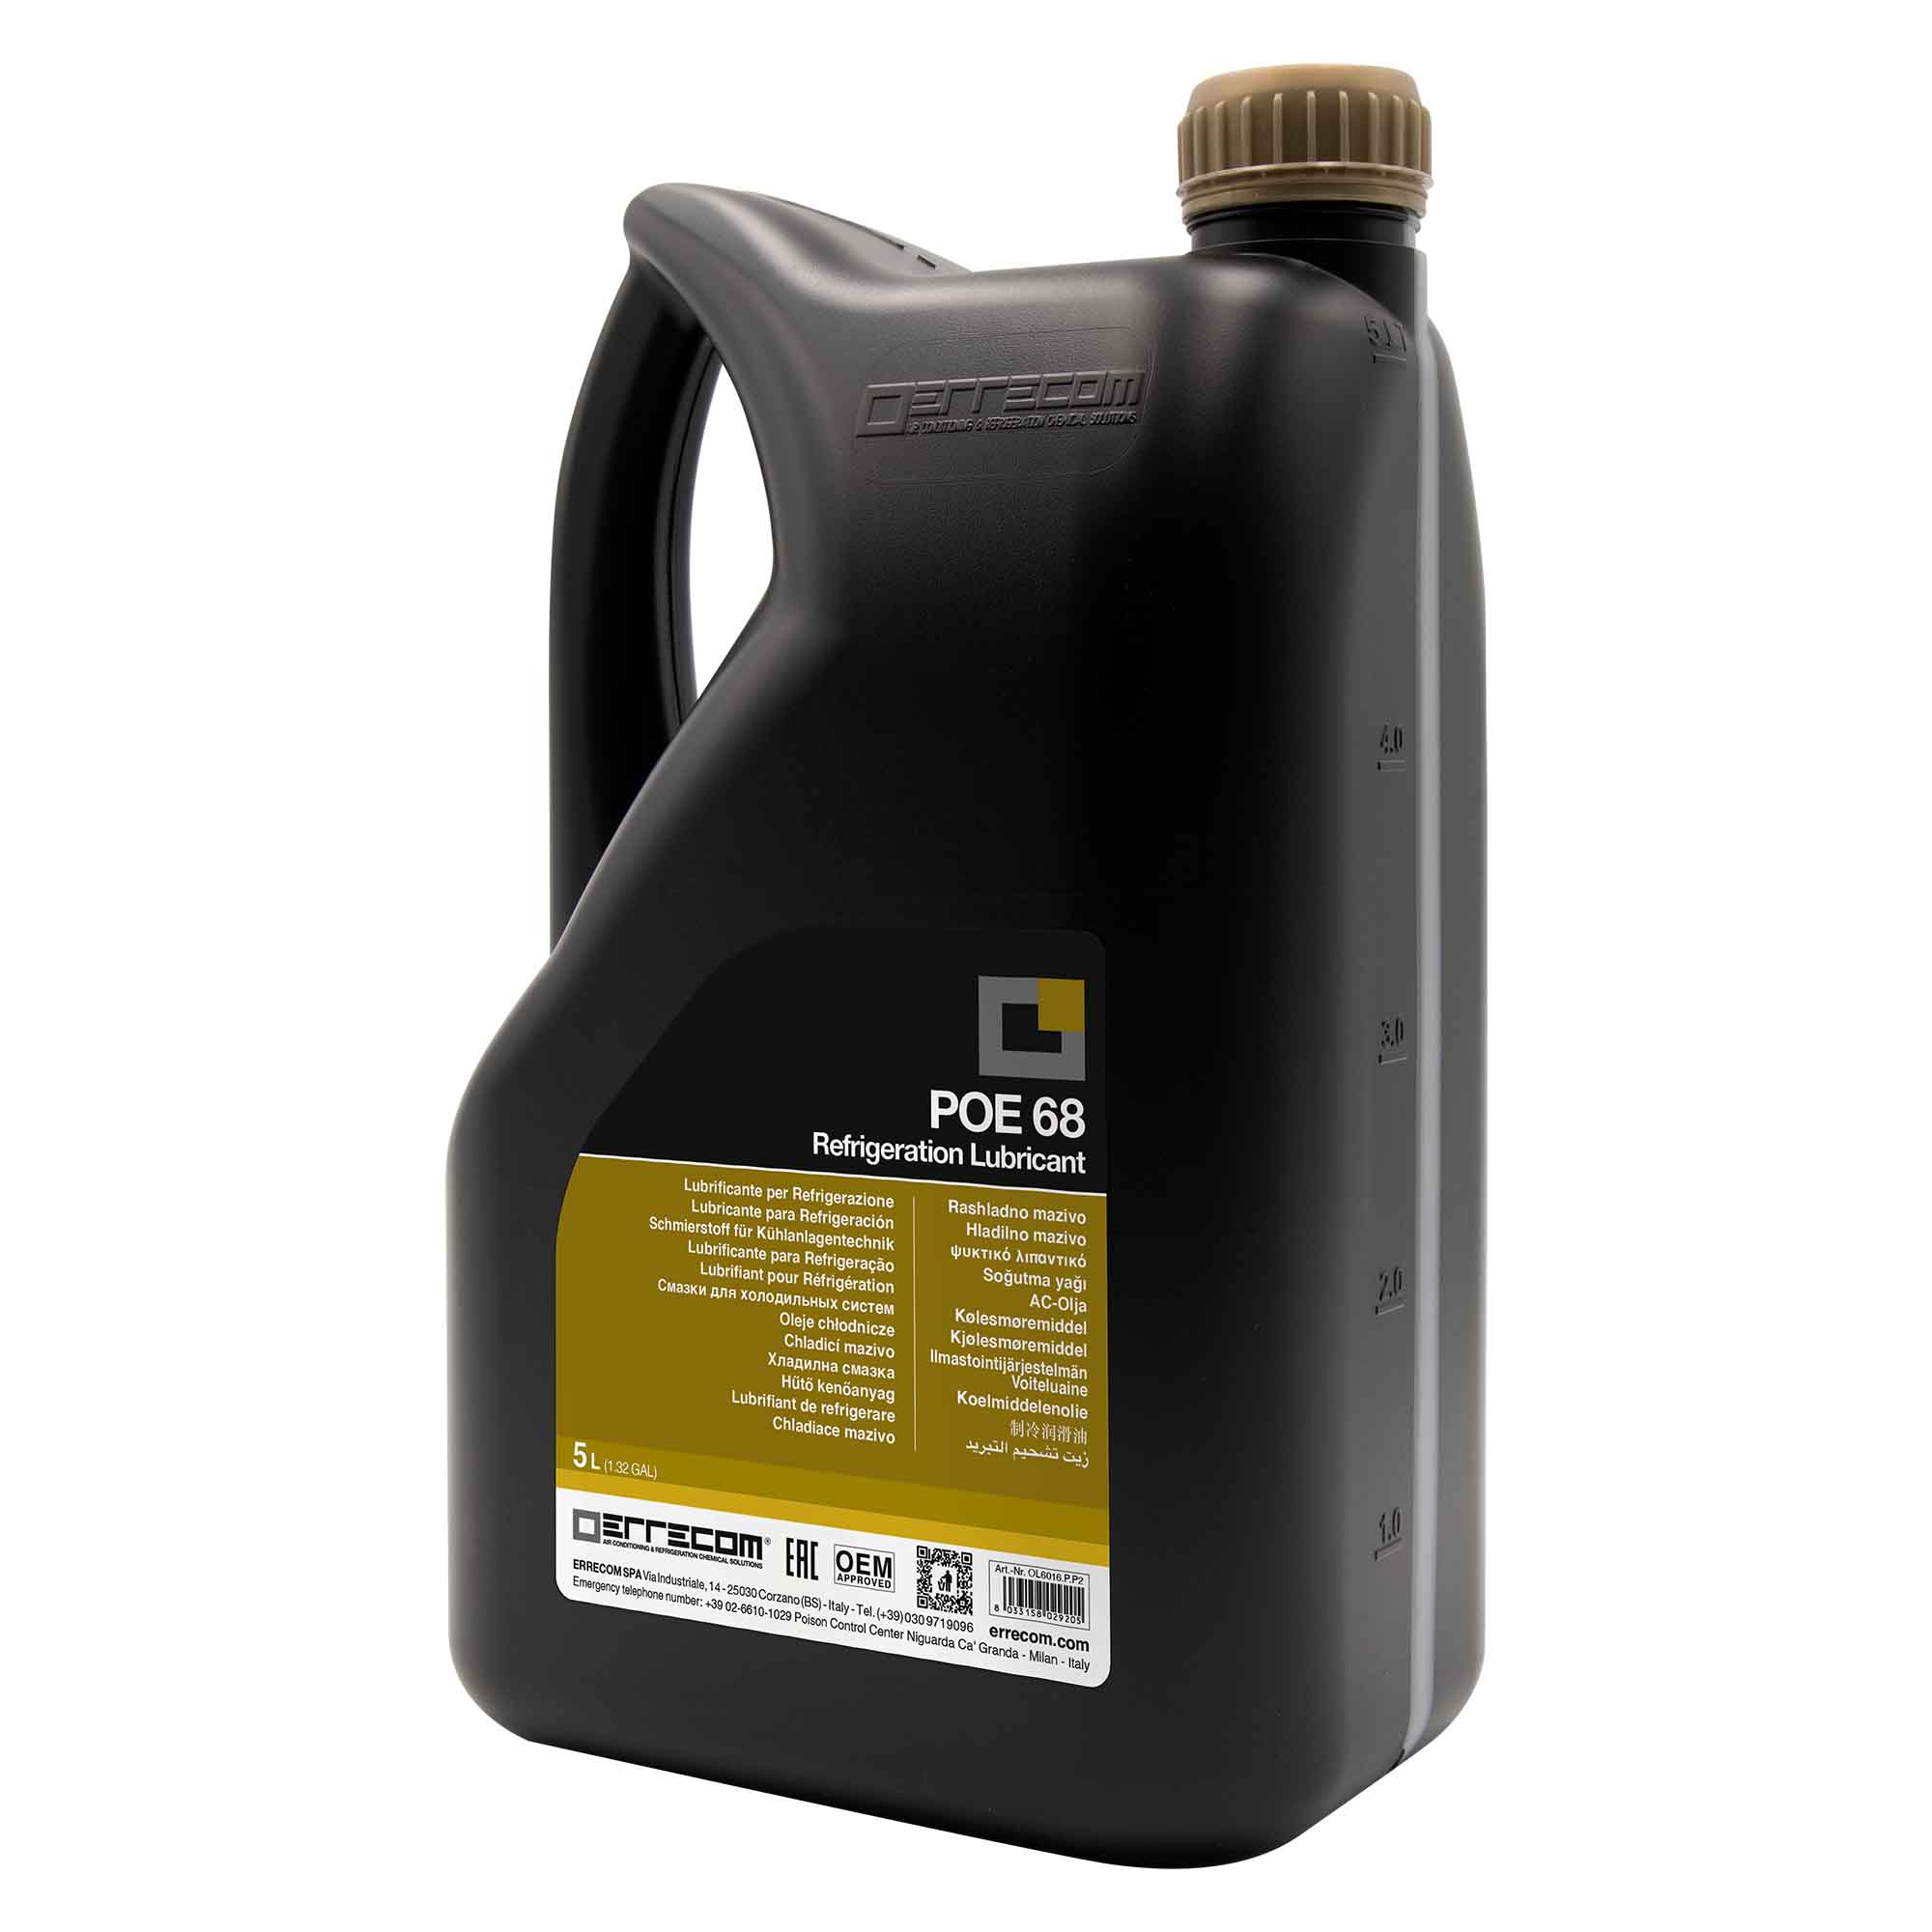 2 x Olio lubrificante R&AC Polyol Estere (POE) Errecom 68 - Tanica in Plastica da 5 lt. - Confezione n° 2 pz. (totale 10 litri) - Foto 1 